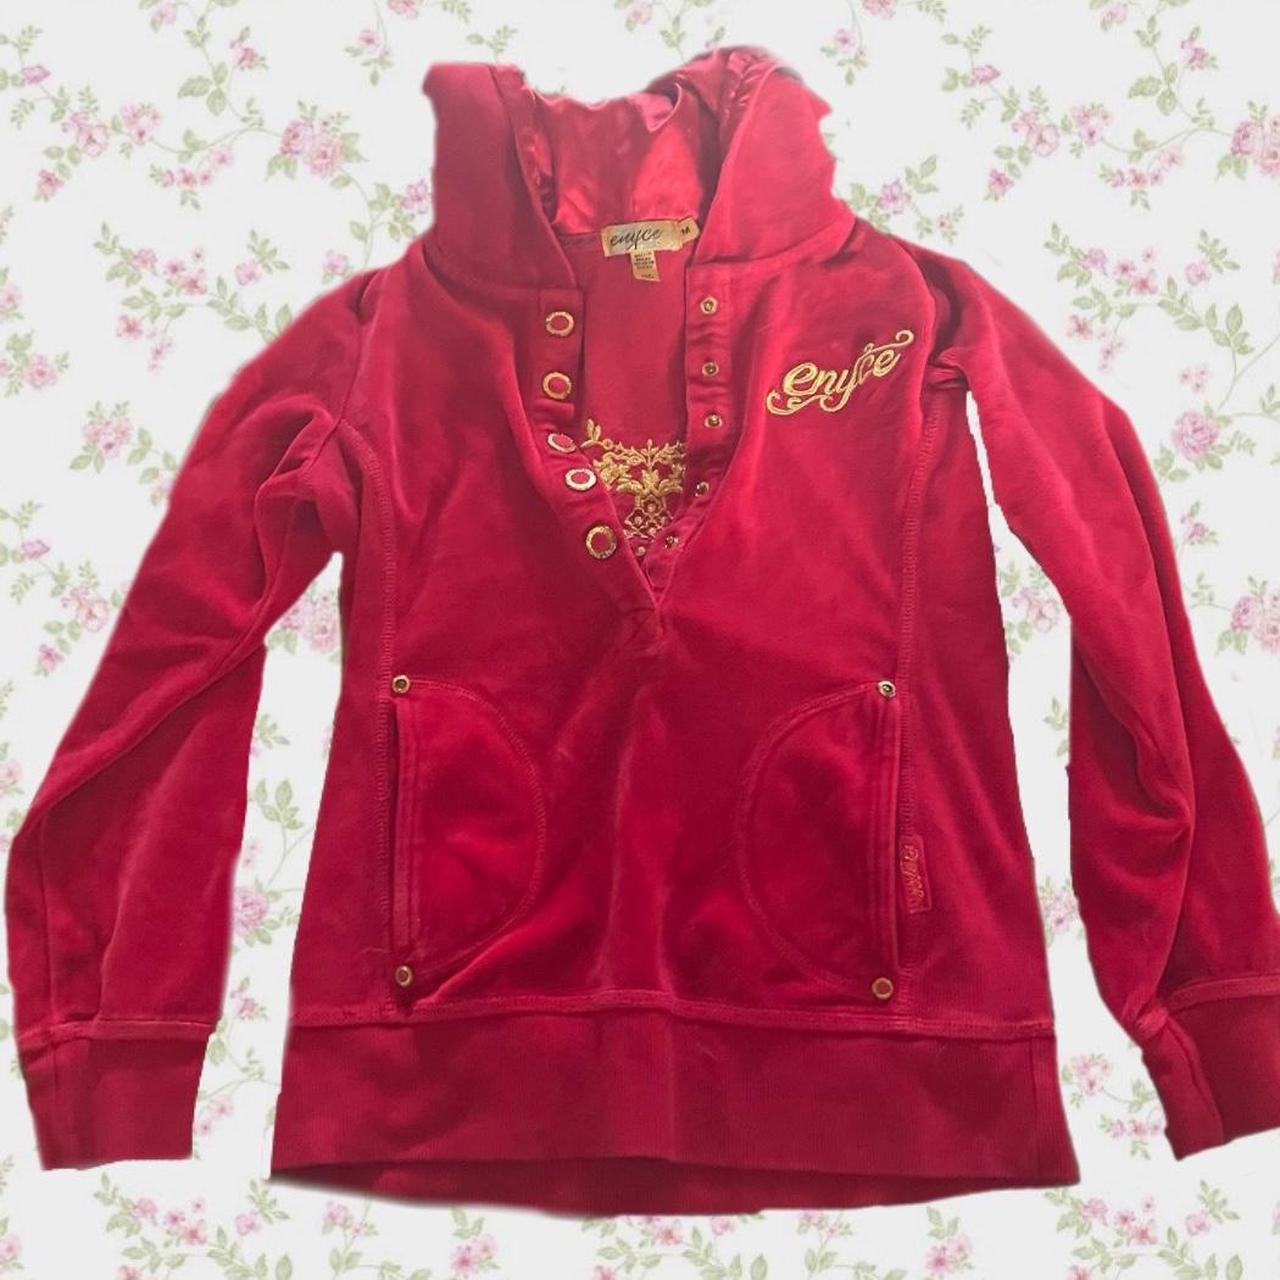 Cute small hoodie Kids size medium Y2k design on... - Depop